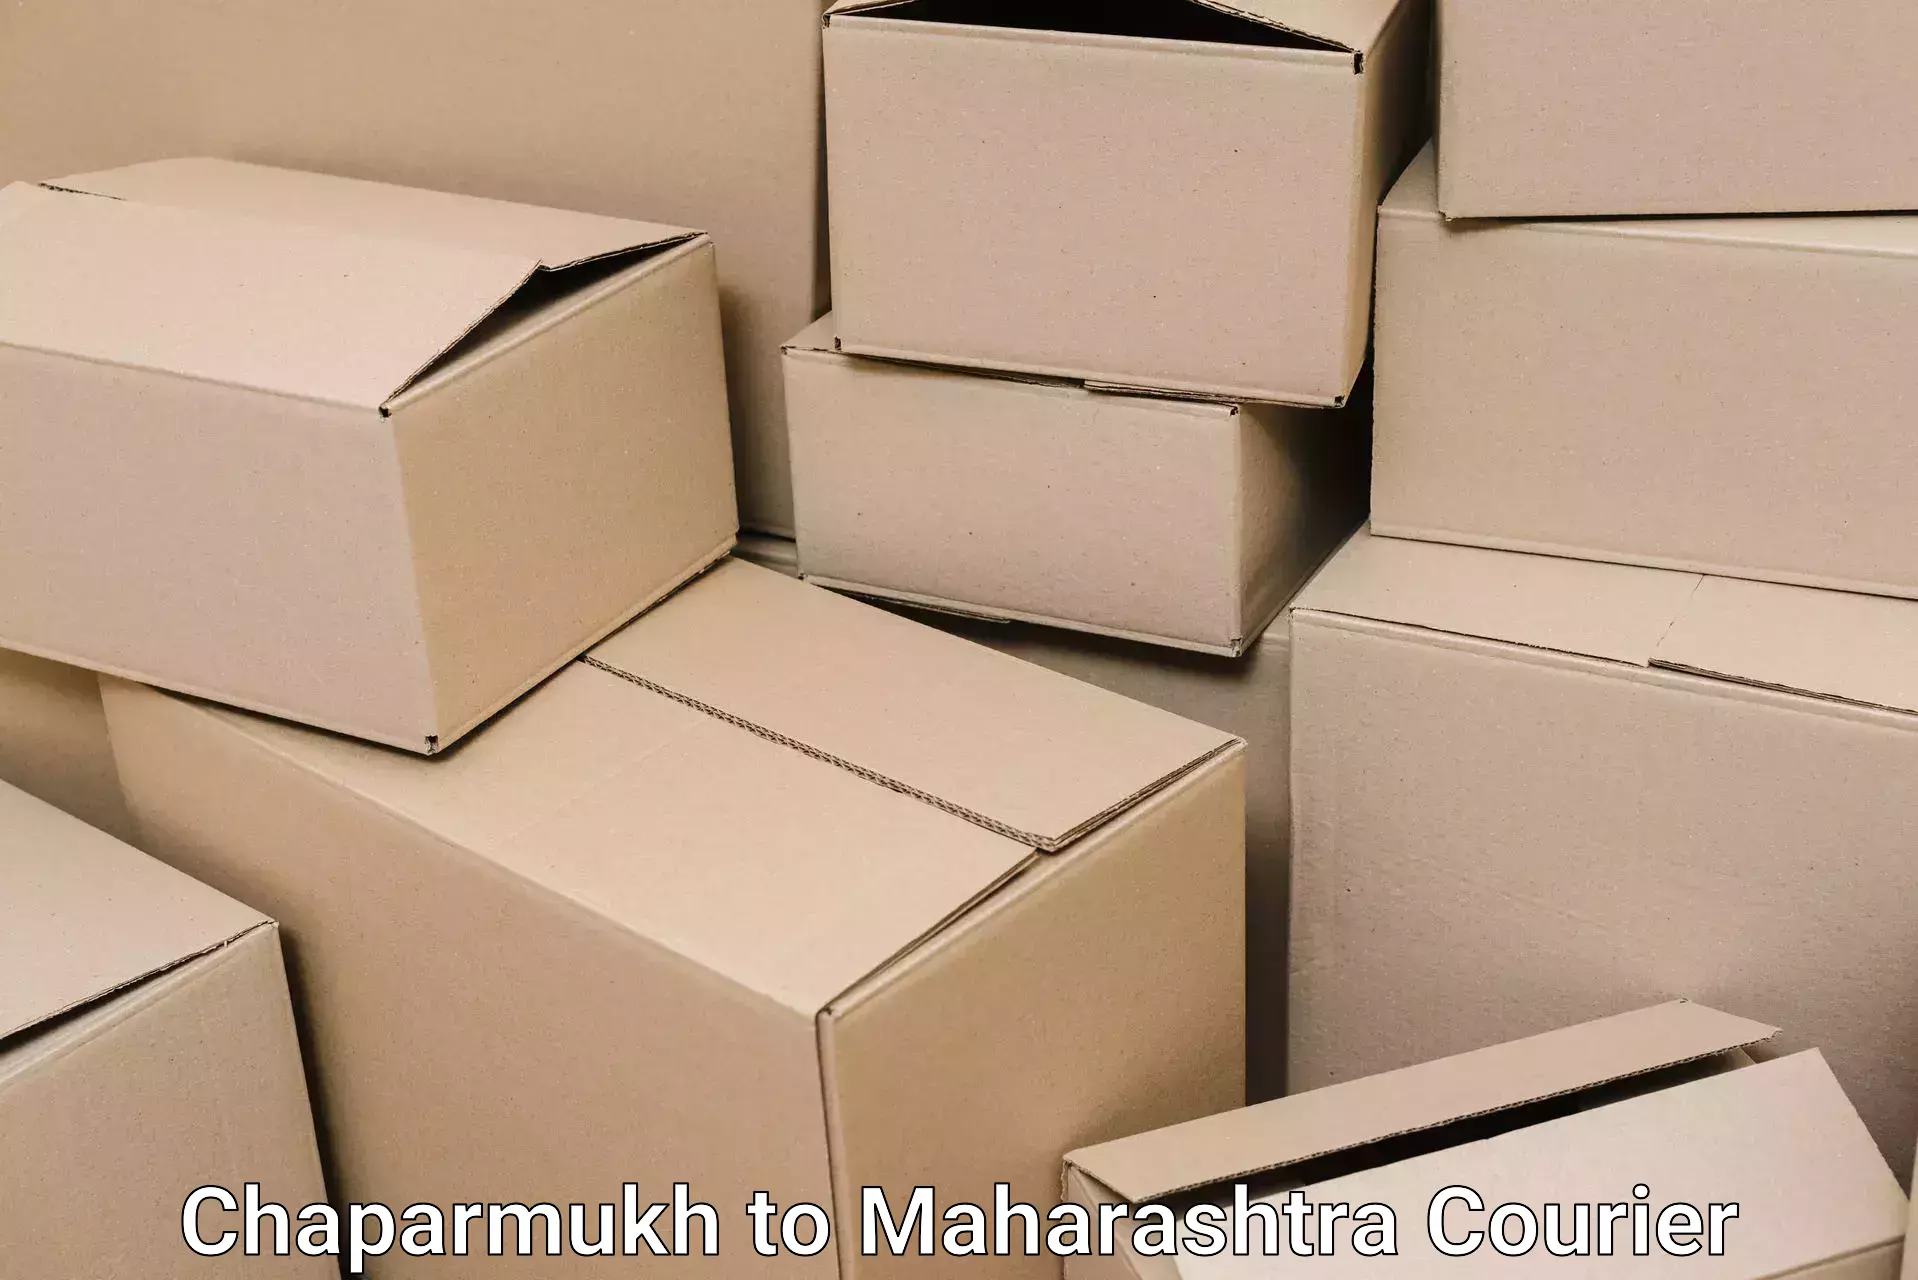 Efficient packing and moving Chaparmukh to Karanja